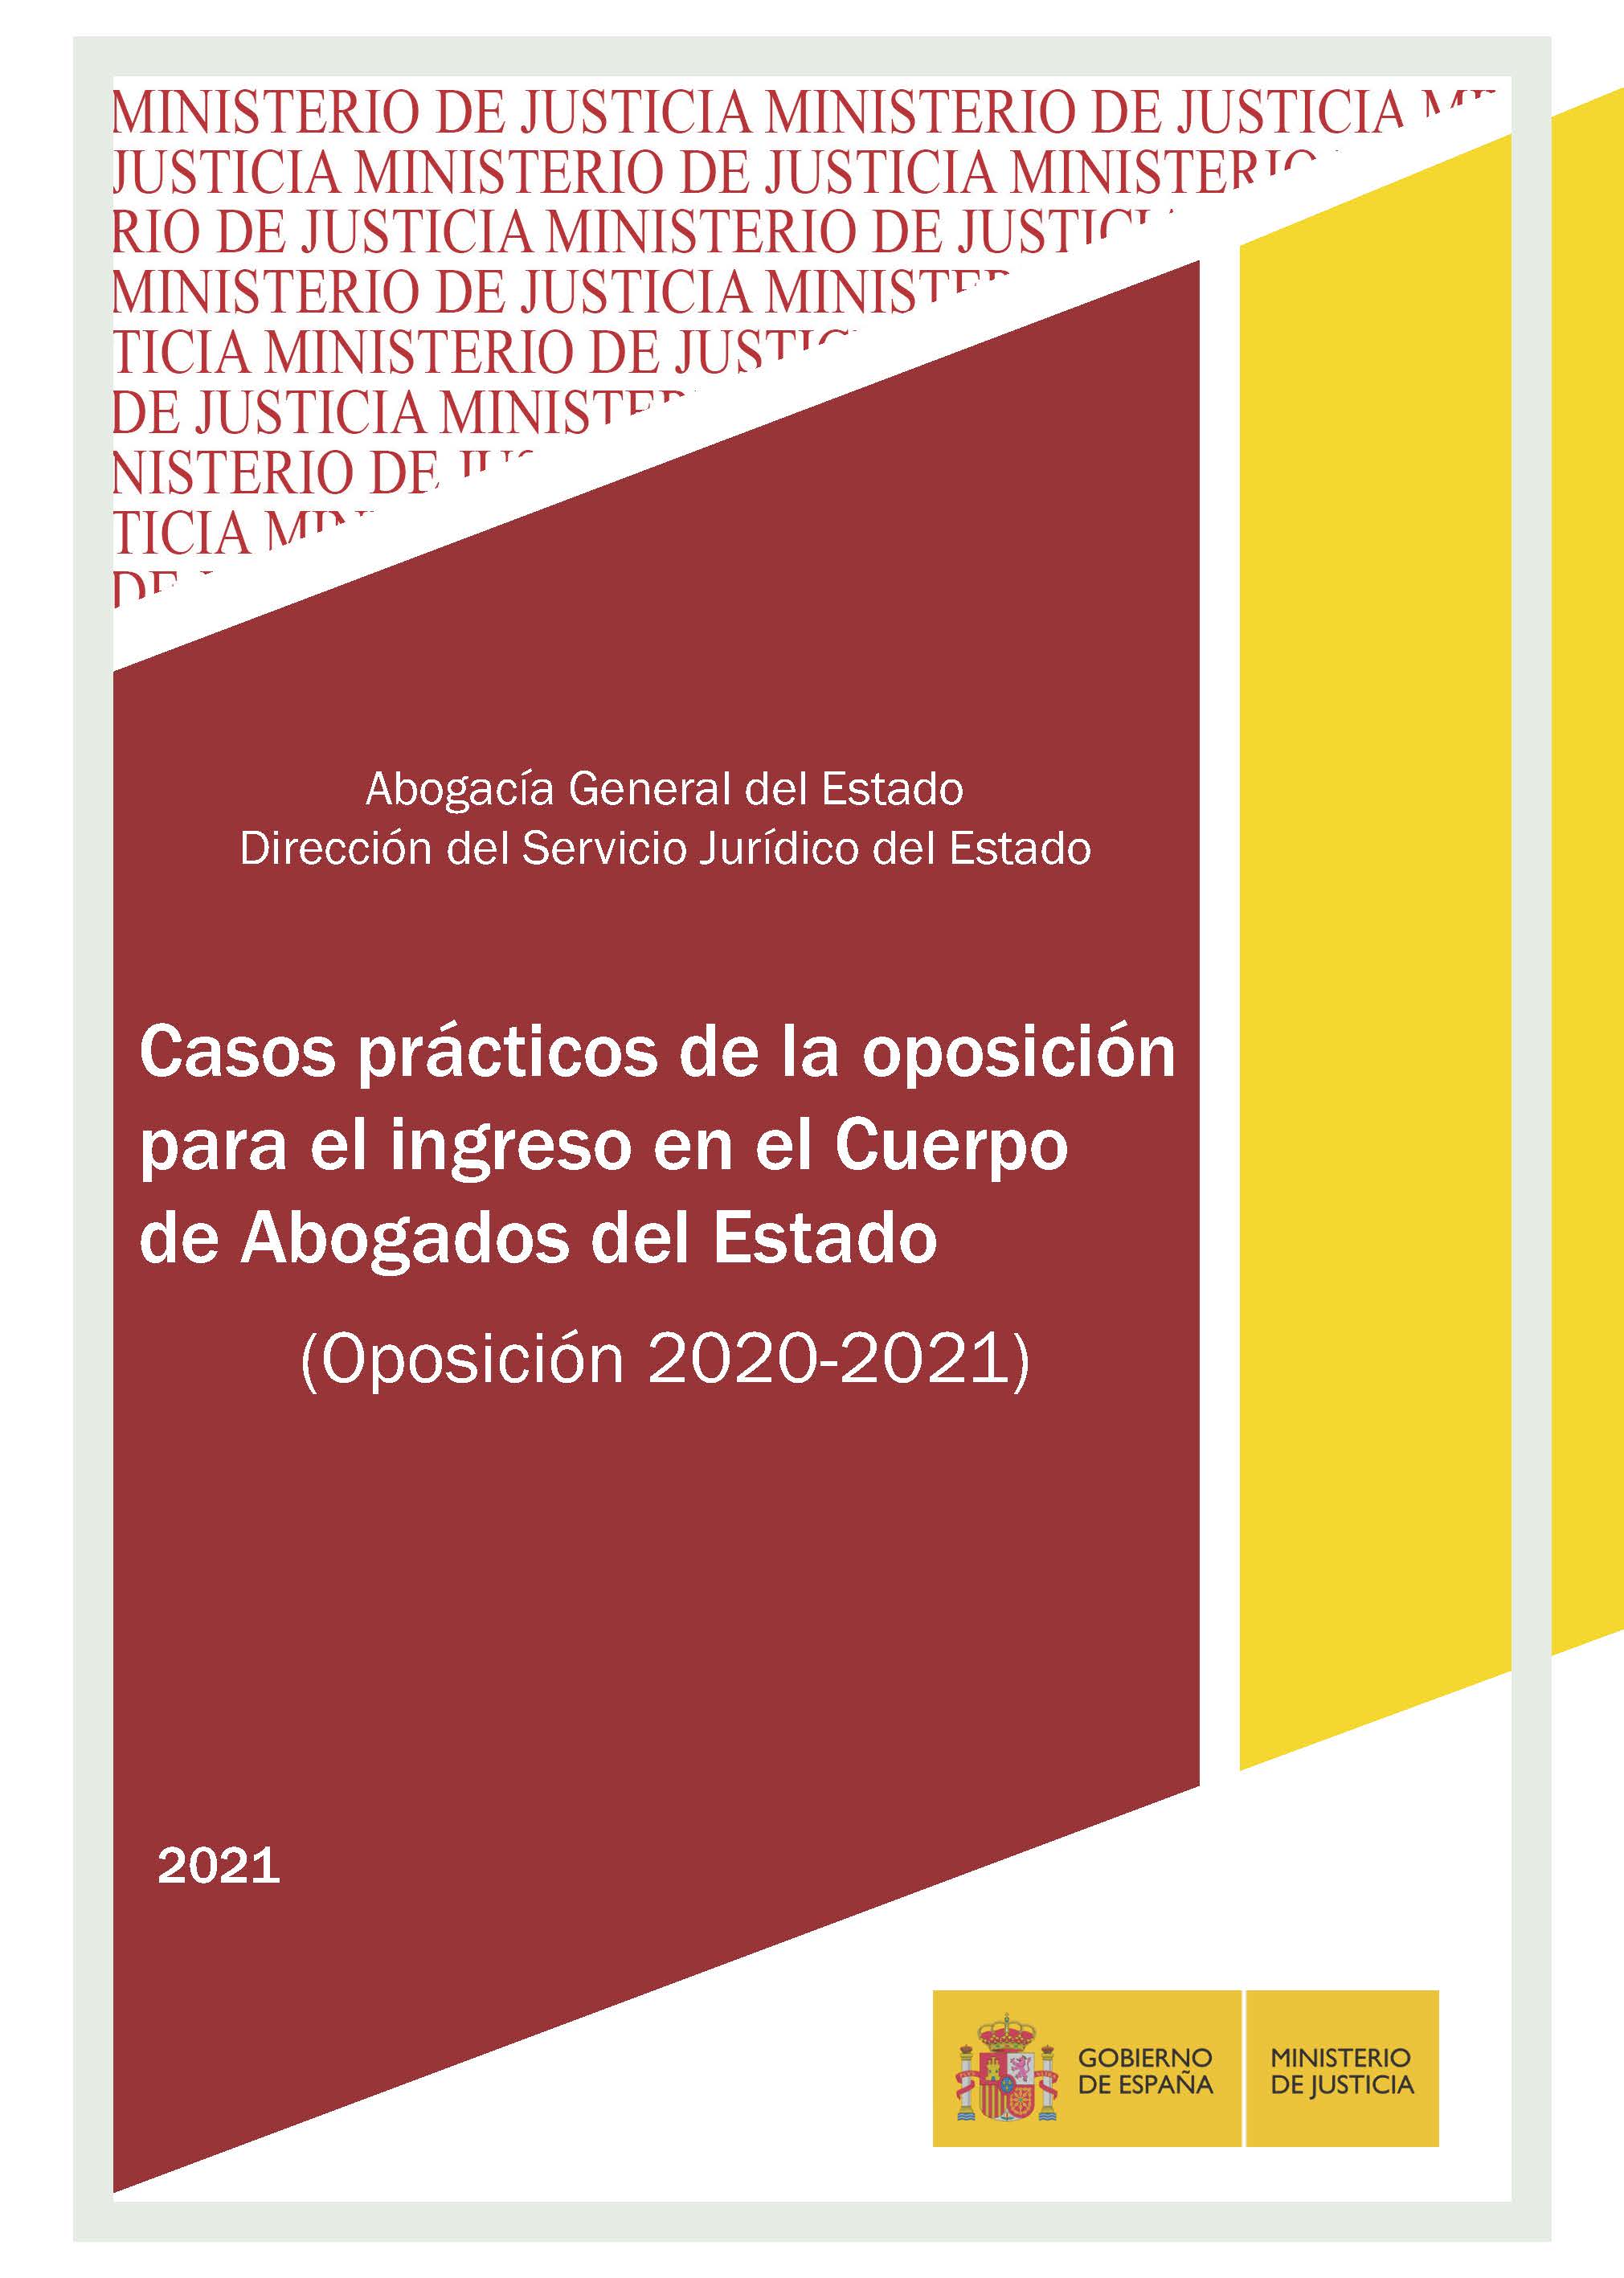 Veure els detalls de CASOS PRÁCTICOS DE LA OPOSICIÓN PARA EL INGRESO EN EL CUERPO DE ABOGADOS DEL ESTADO 2020-2021 ,PDF